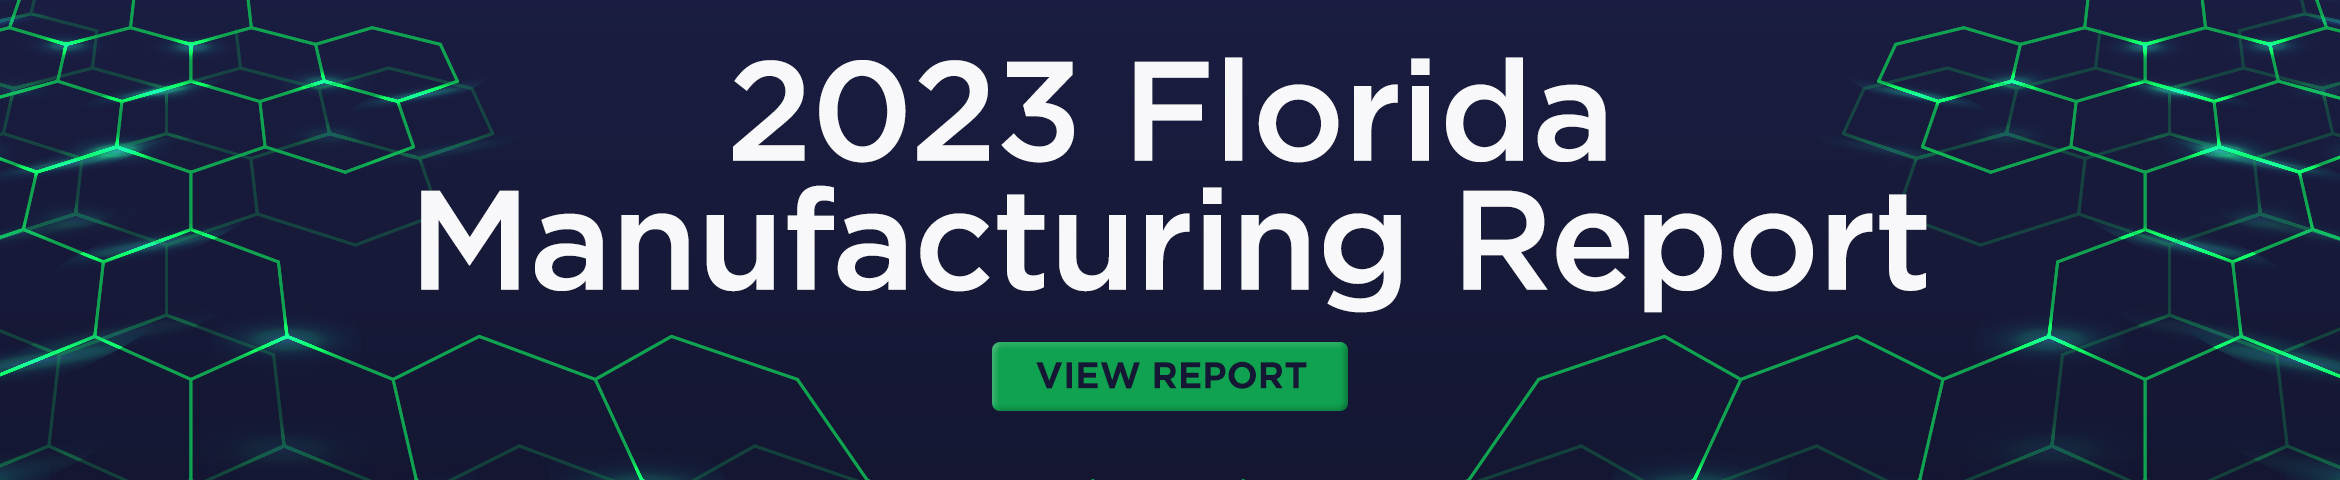 2023 Florida Manufacturing banner